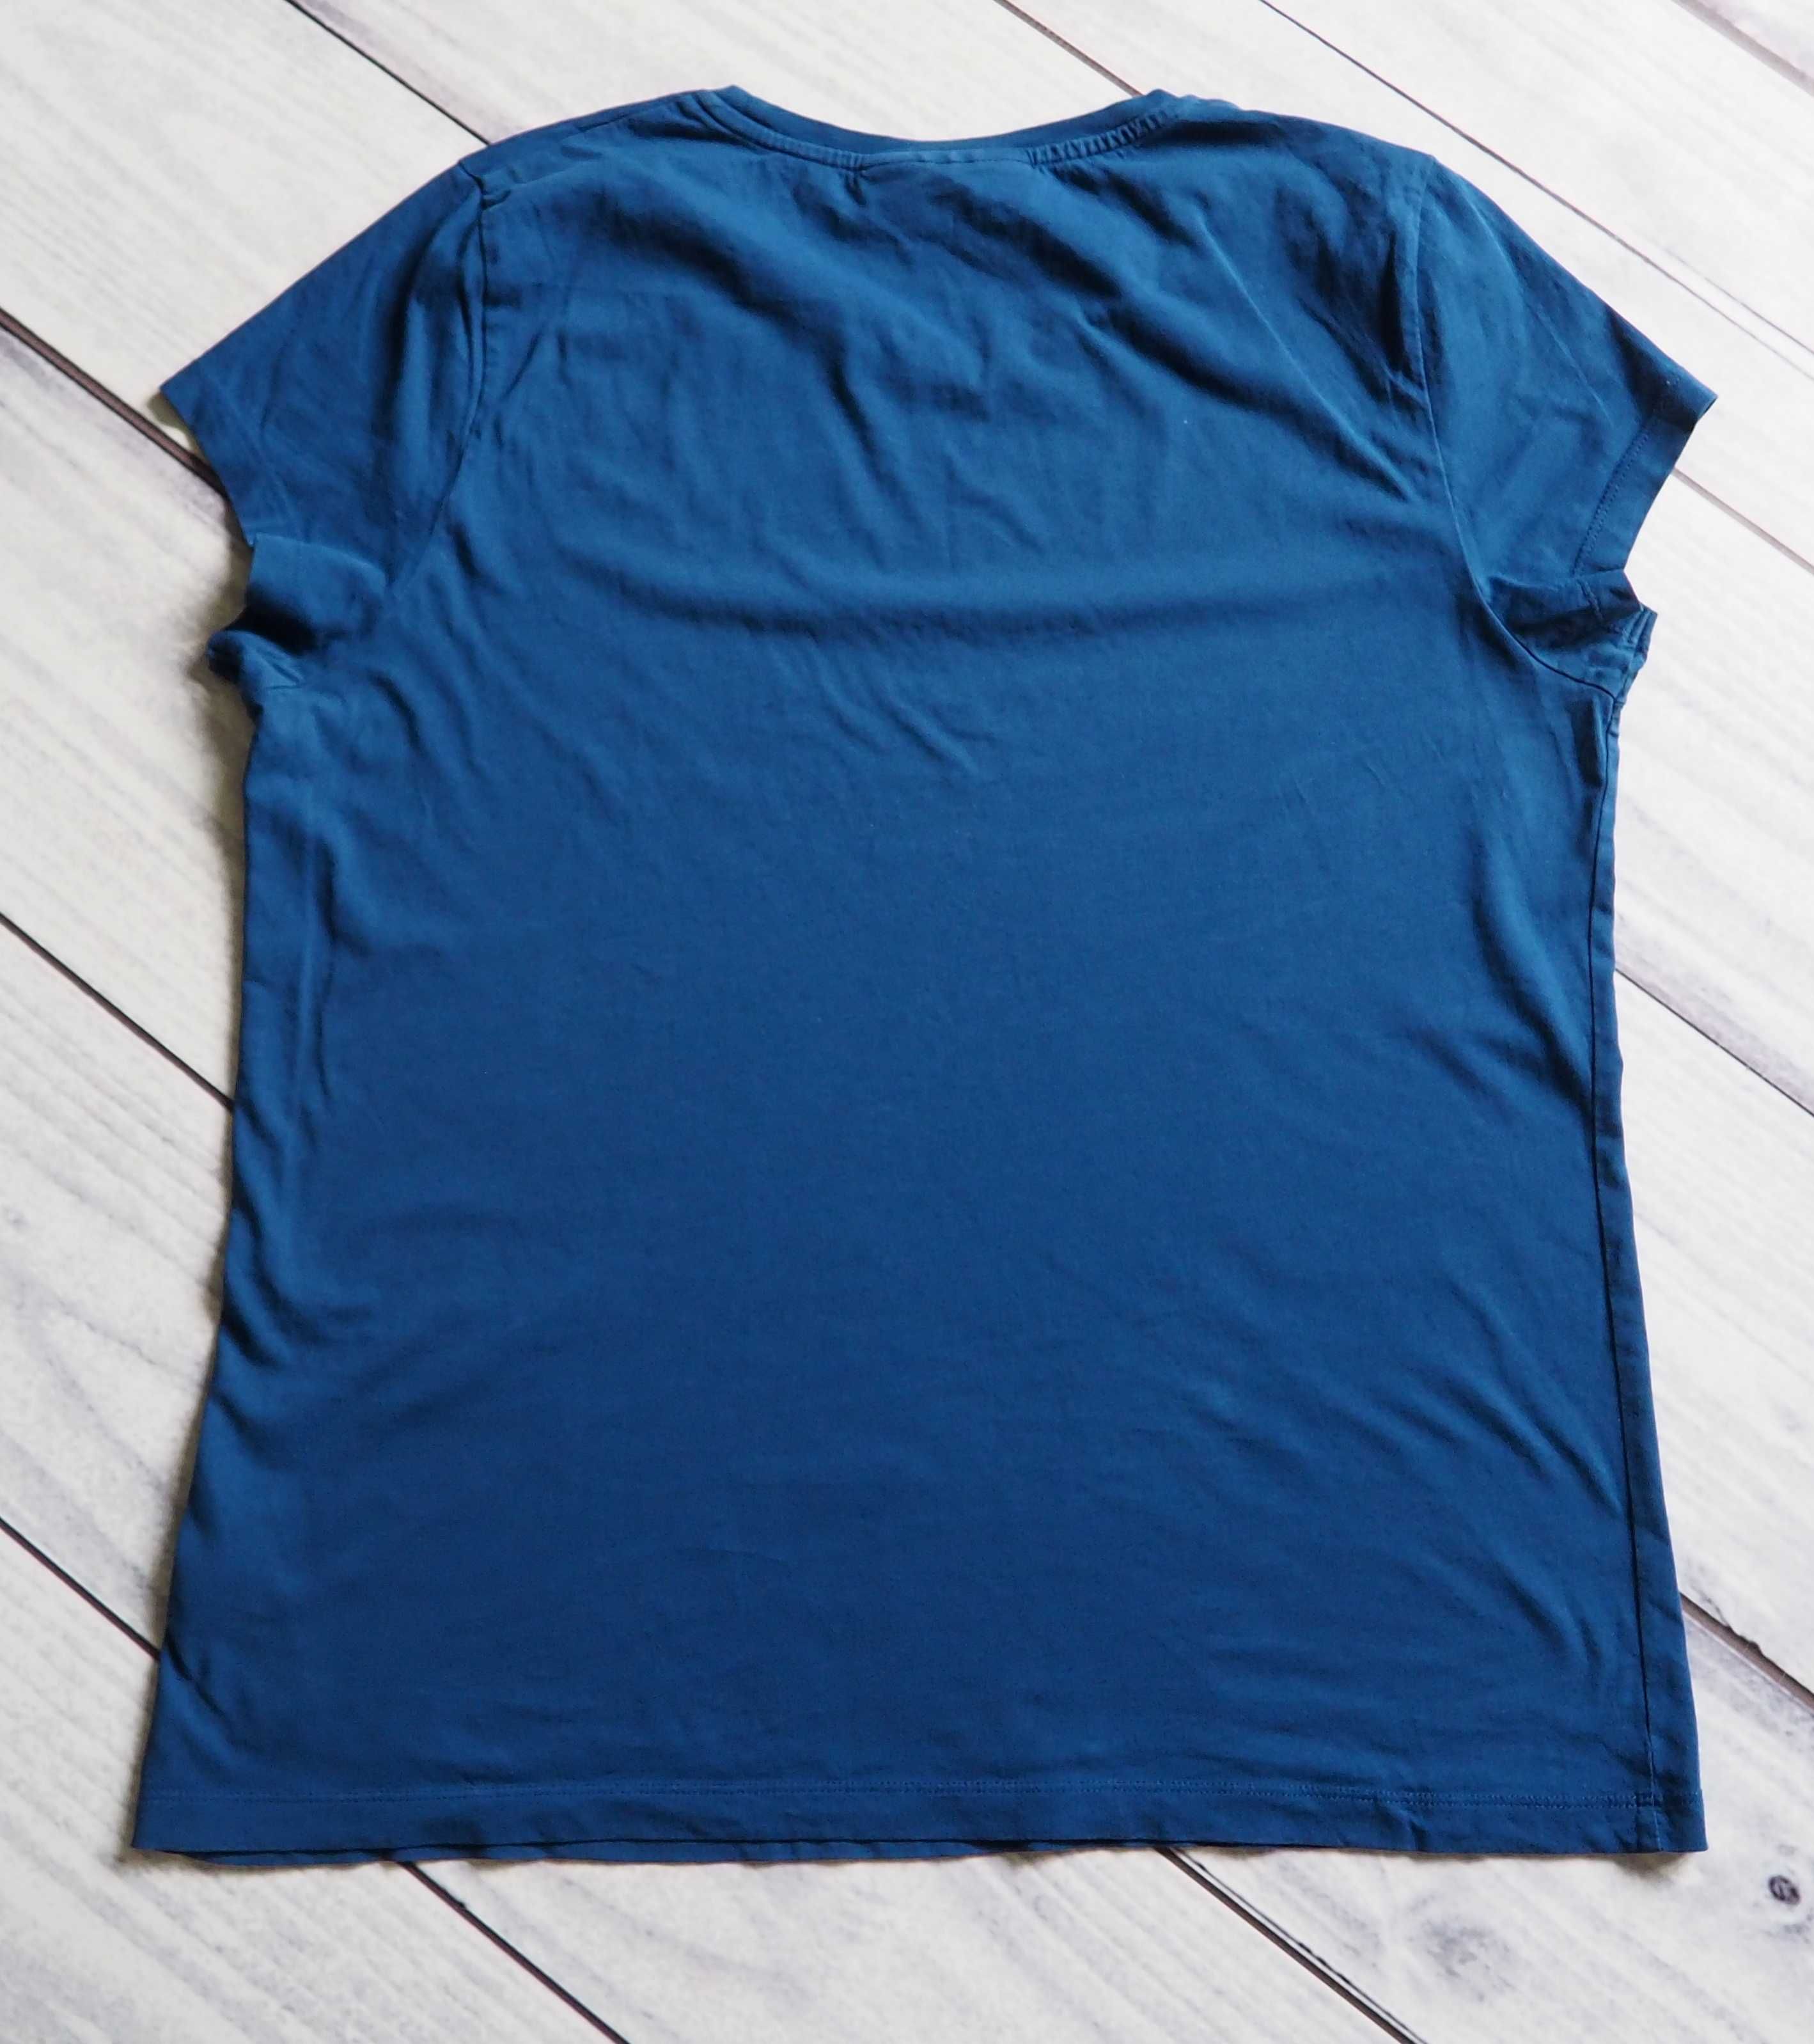 Peak Performance_t-shirt damski_rozmiar XL